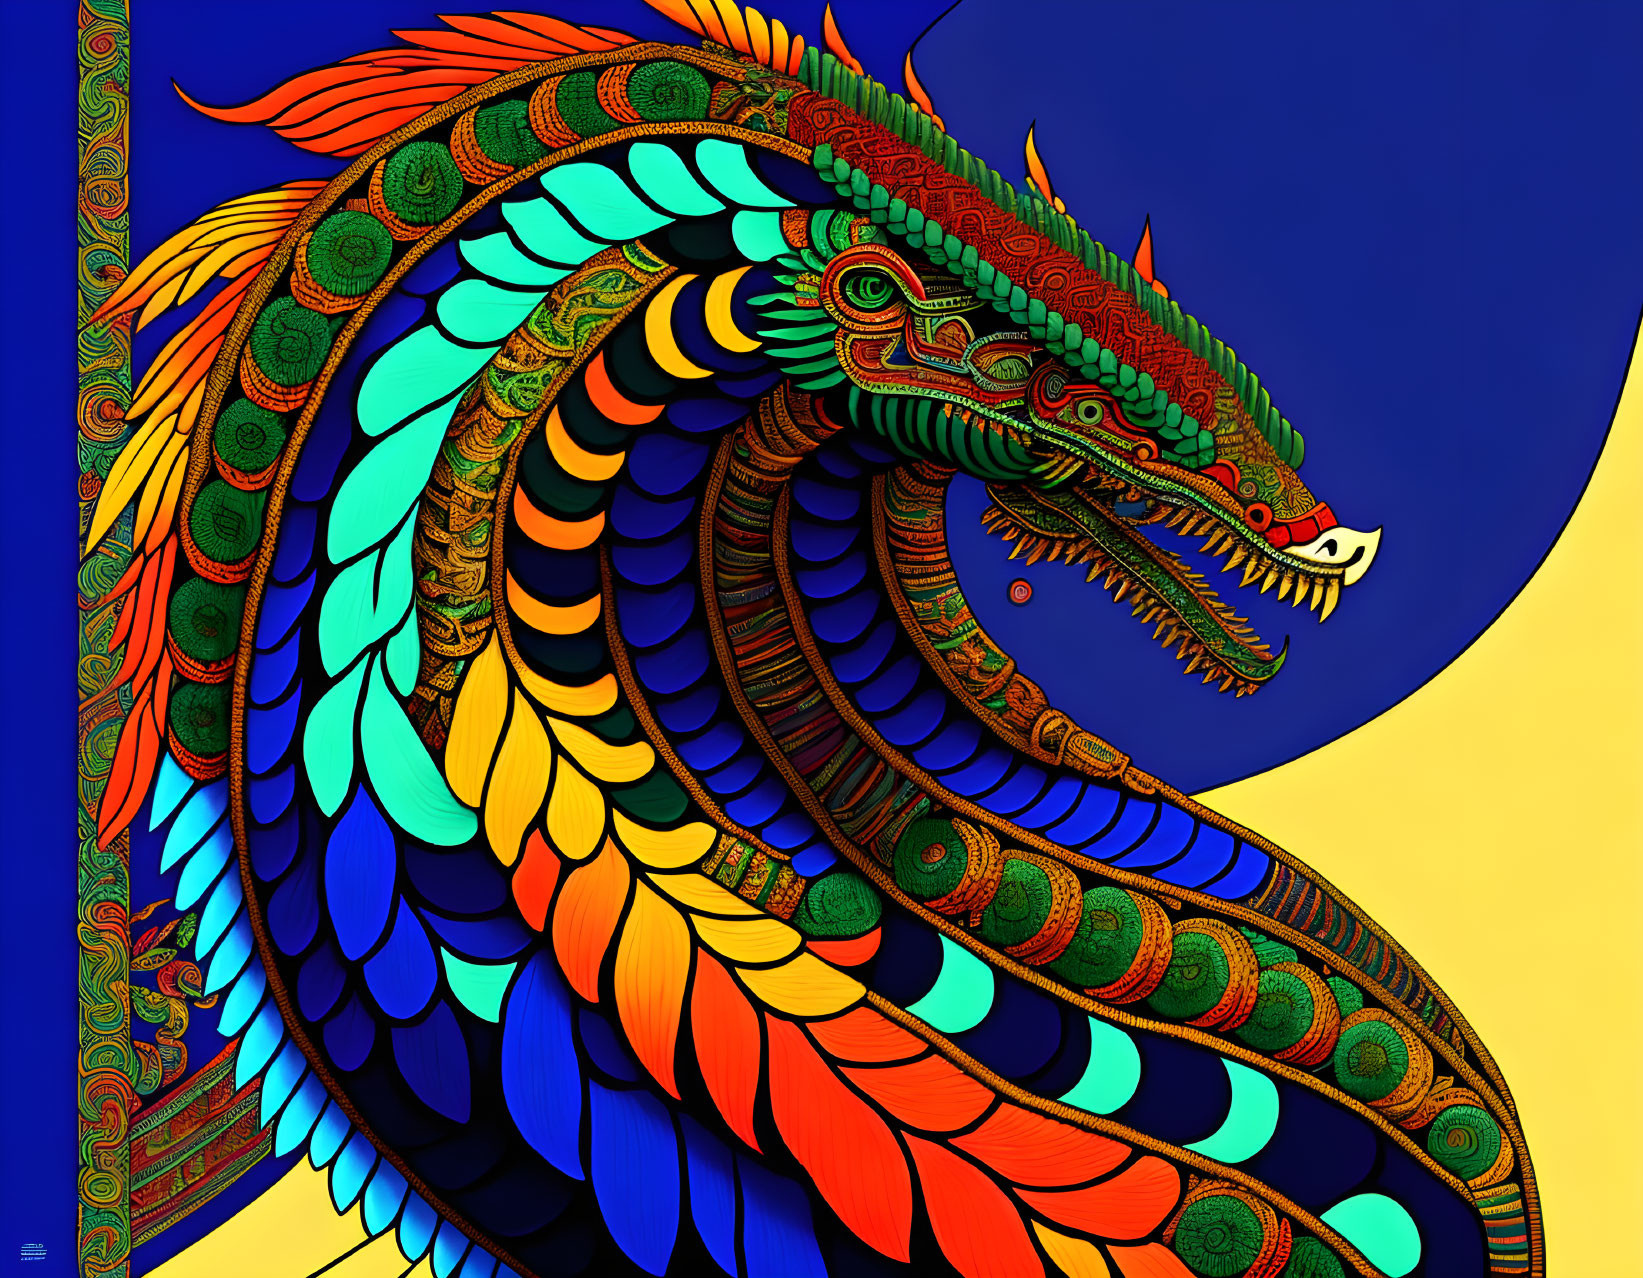 Quetzalcoatl 